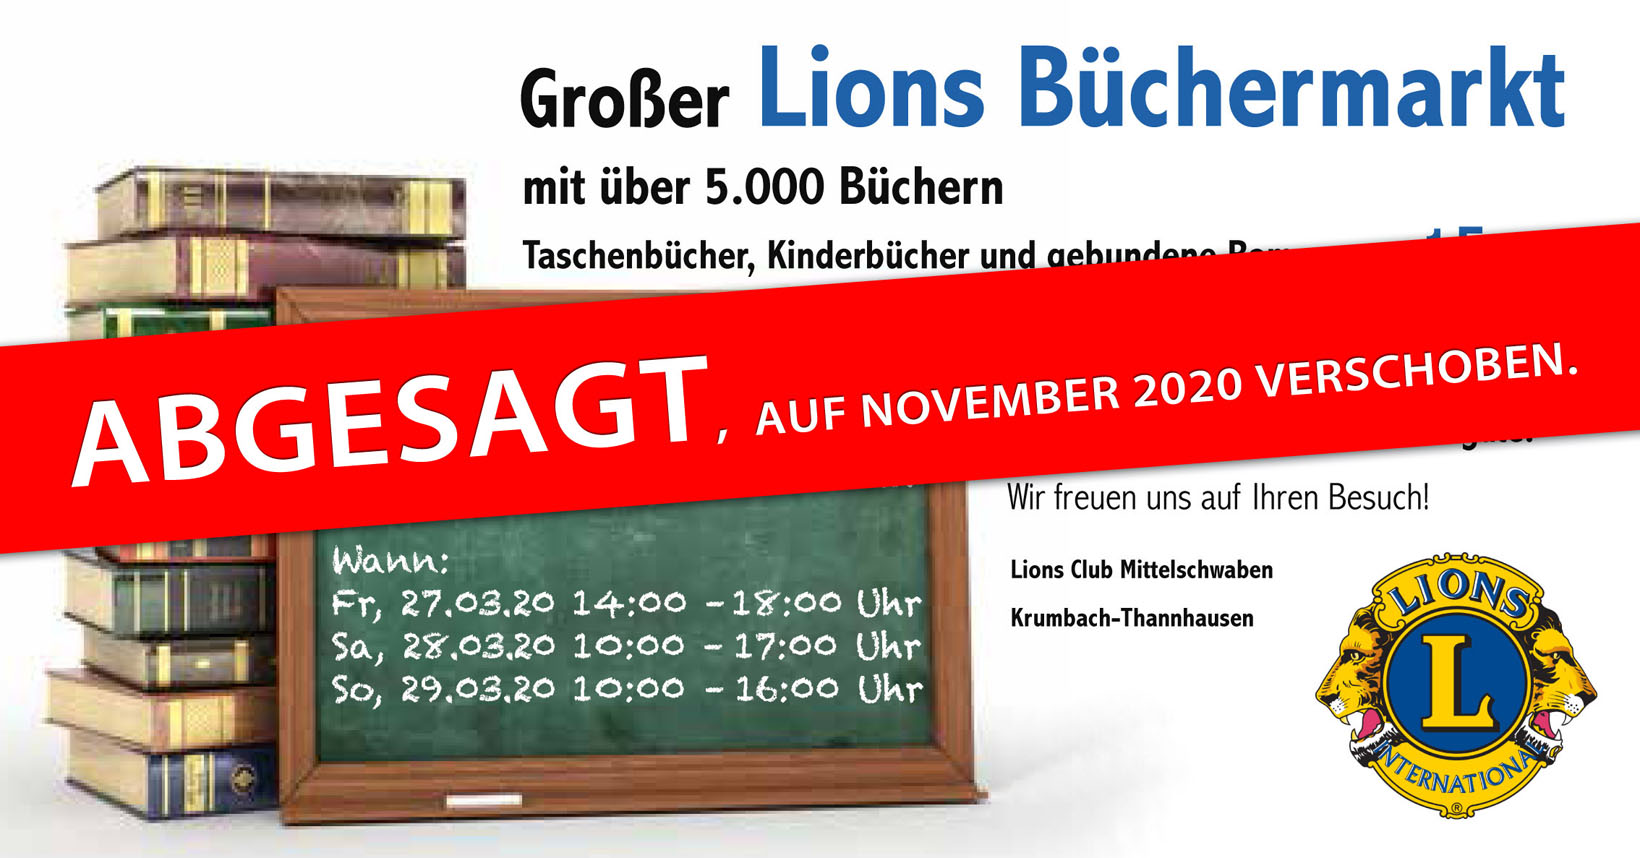 Lions Buechermarkt 27-29.03.2020 ABGESAGT und auf November 2020 verschoben.